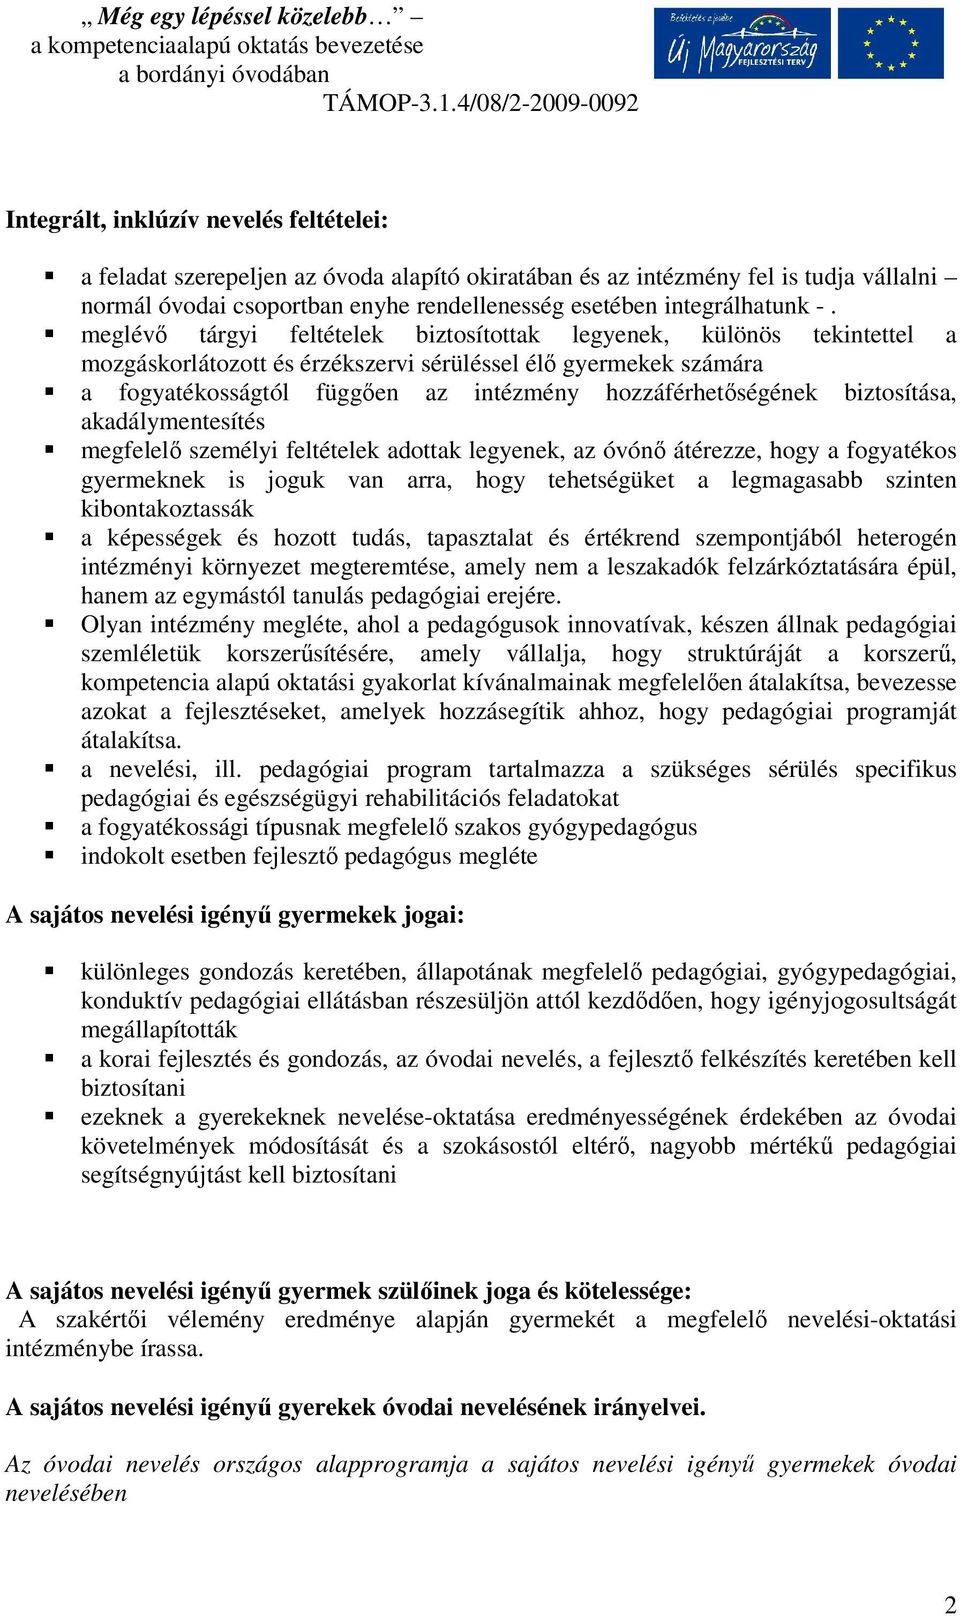 Integrált nevelés óvodánkban - PDF Ingyenes letöltés